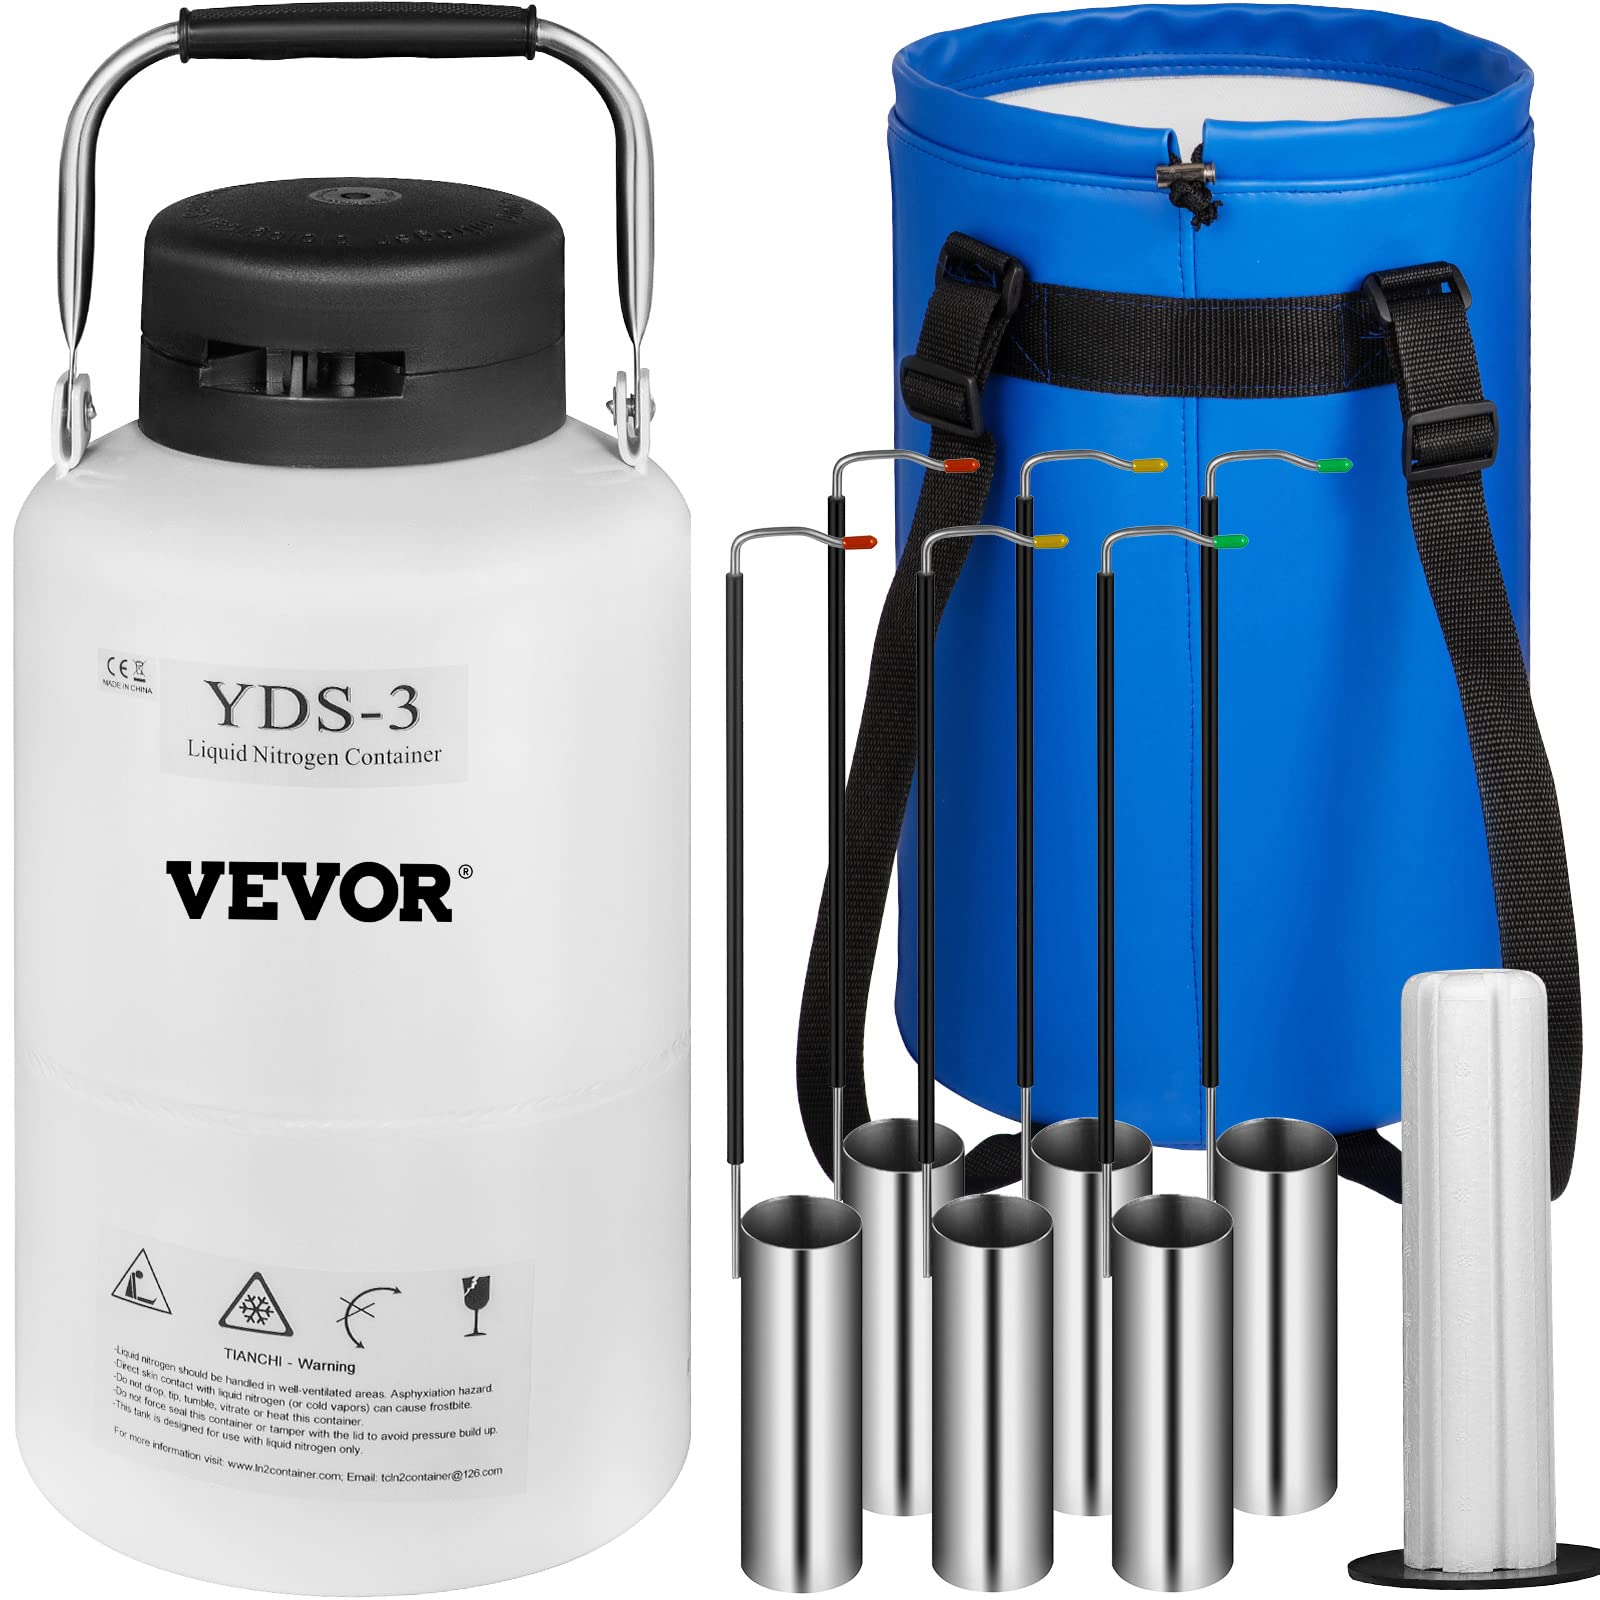 VEVO R Behälter für flüssigen Stickstoff, 3 l, kryogener Behälter für flüssigen Stickstoff, LN2, kryogener Behälter, statisch, Dewar-Tank mit Gurten, für wissenschaftliche medizinische Forschung